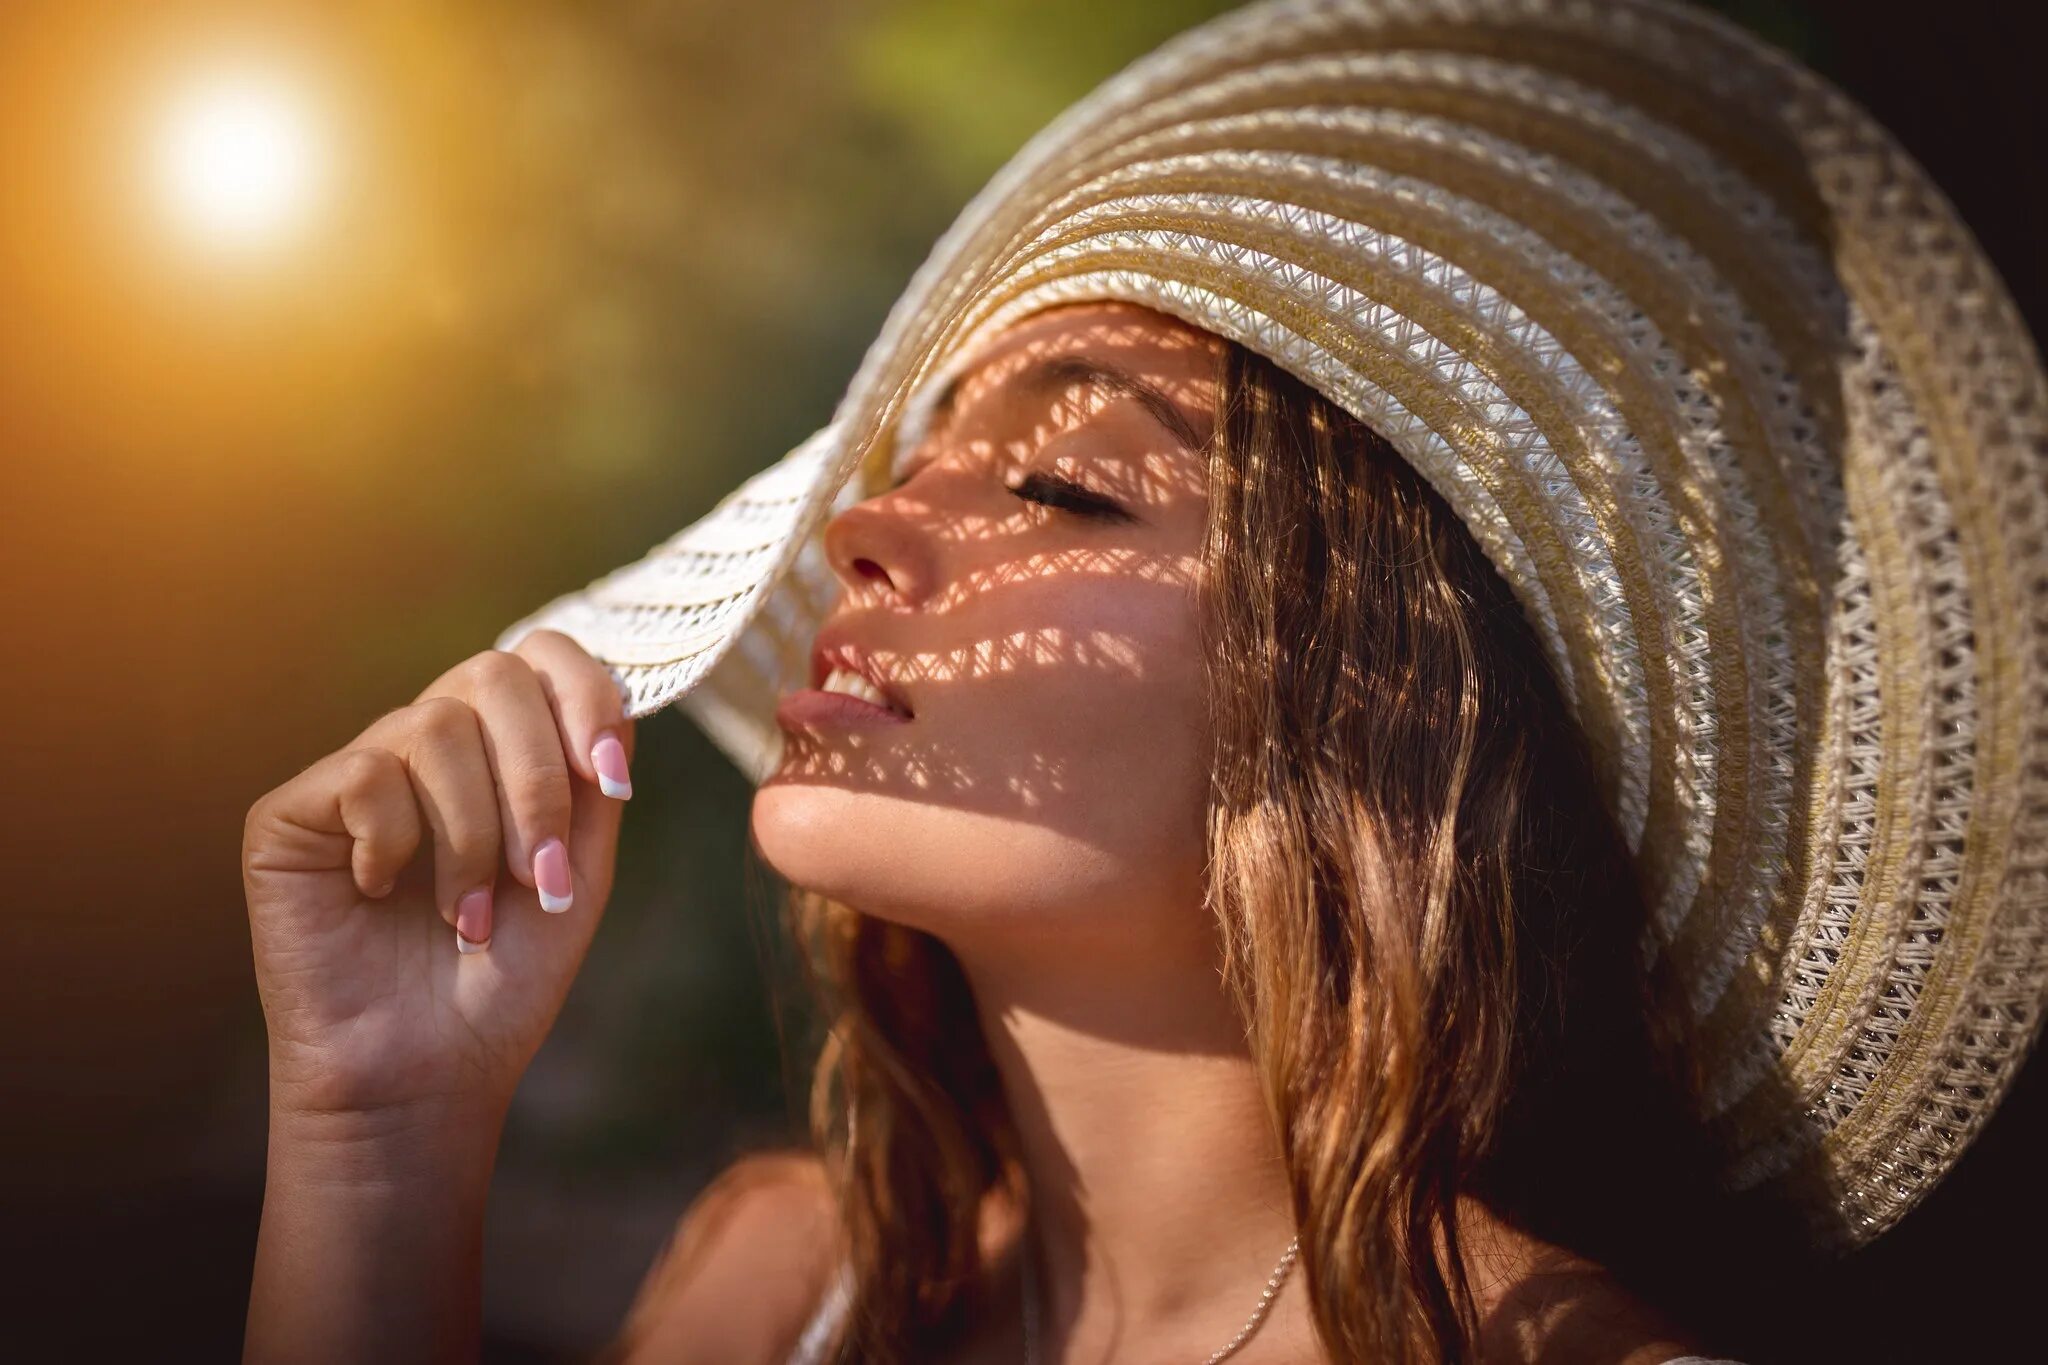 Facing hats. Закрывается от солнца. Девушка щурится от солнца. Защита от солнца девушка. Защита волос и кожи от солнечных лучей.